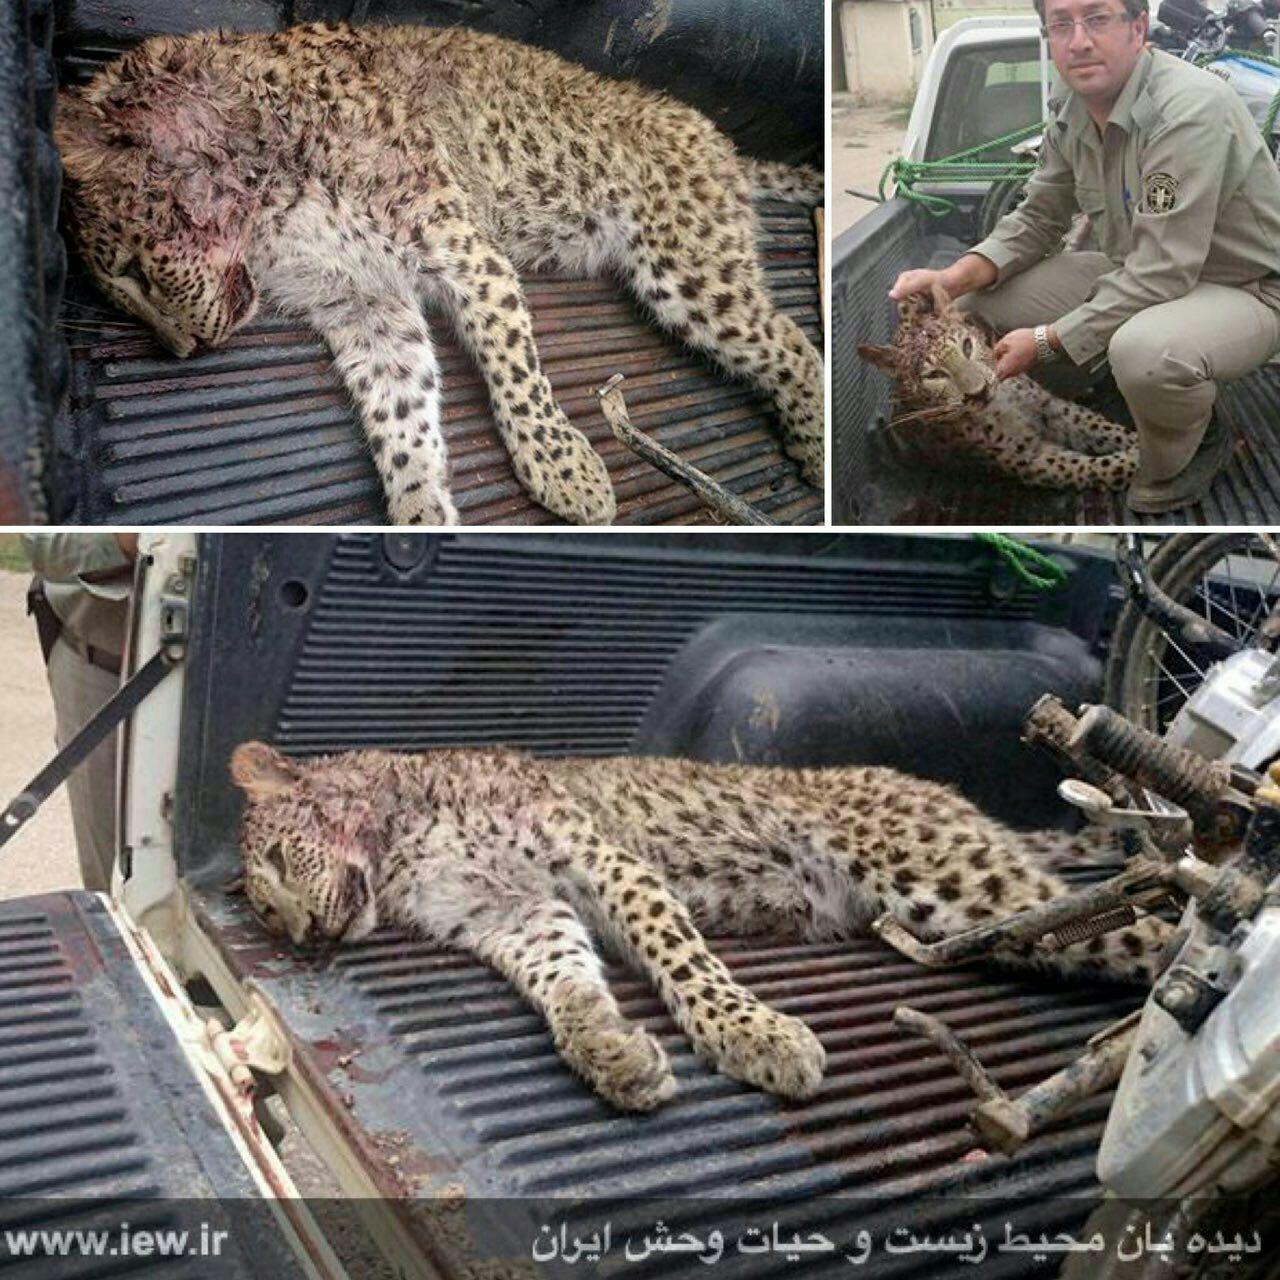 شکارچیان یک توله پلنگ را در مازندران کشتند (+عکس)